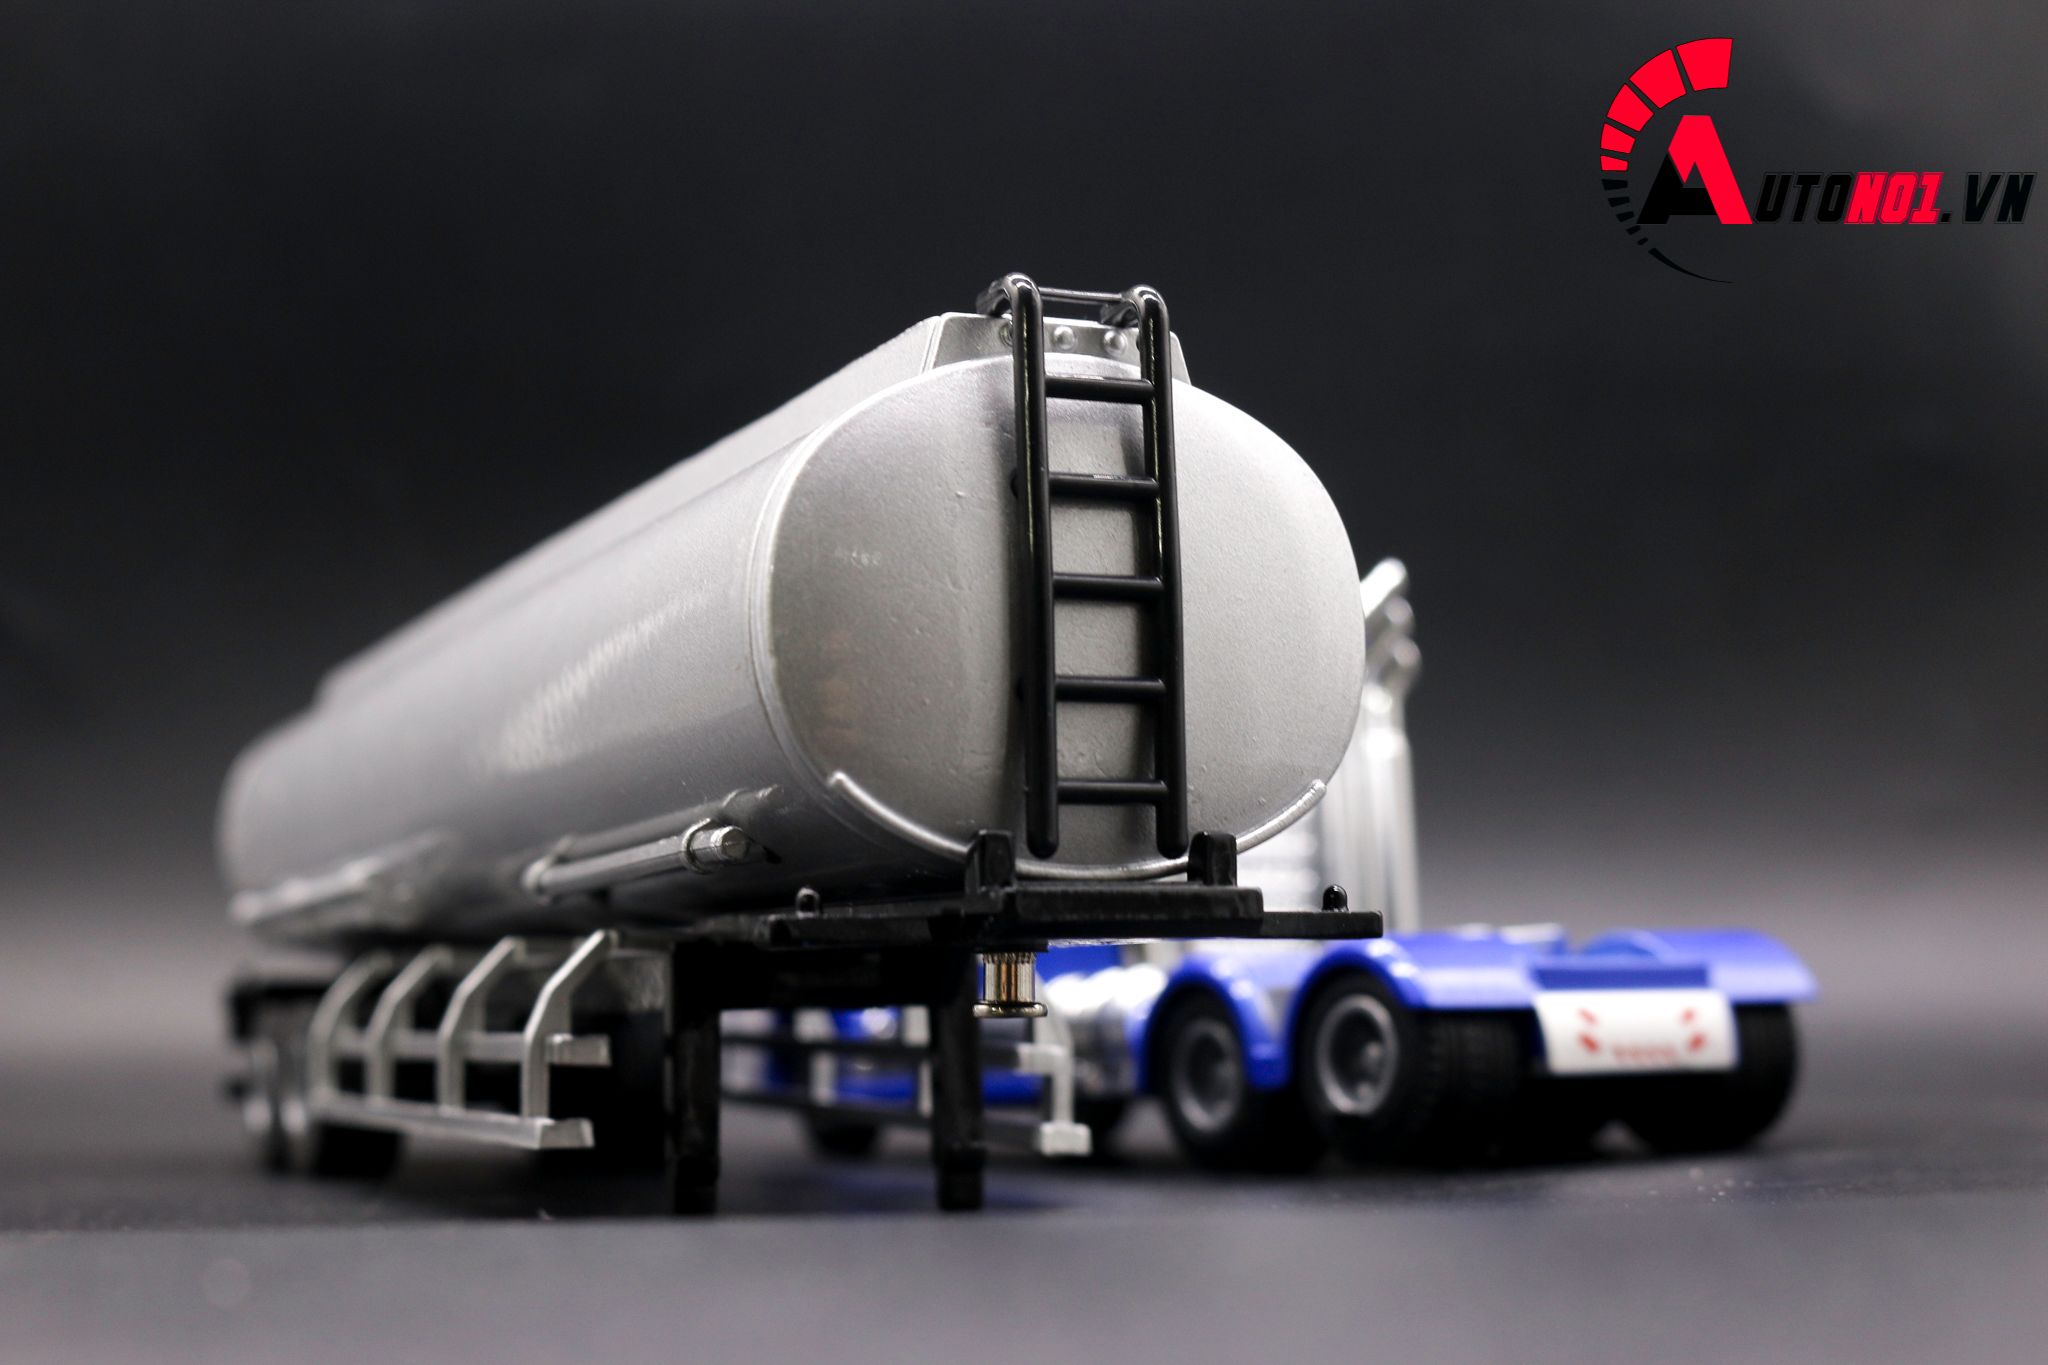  Mô hình xe tải thùng nhiên liệu 1:50 huayi alloy 7647 